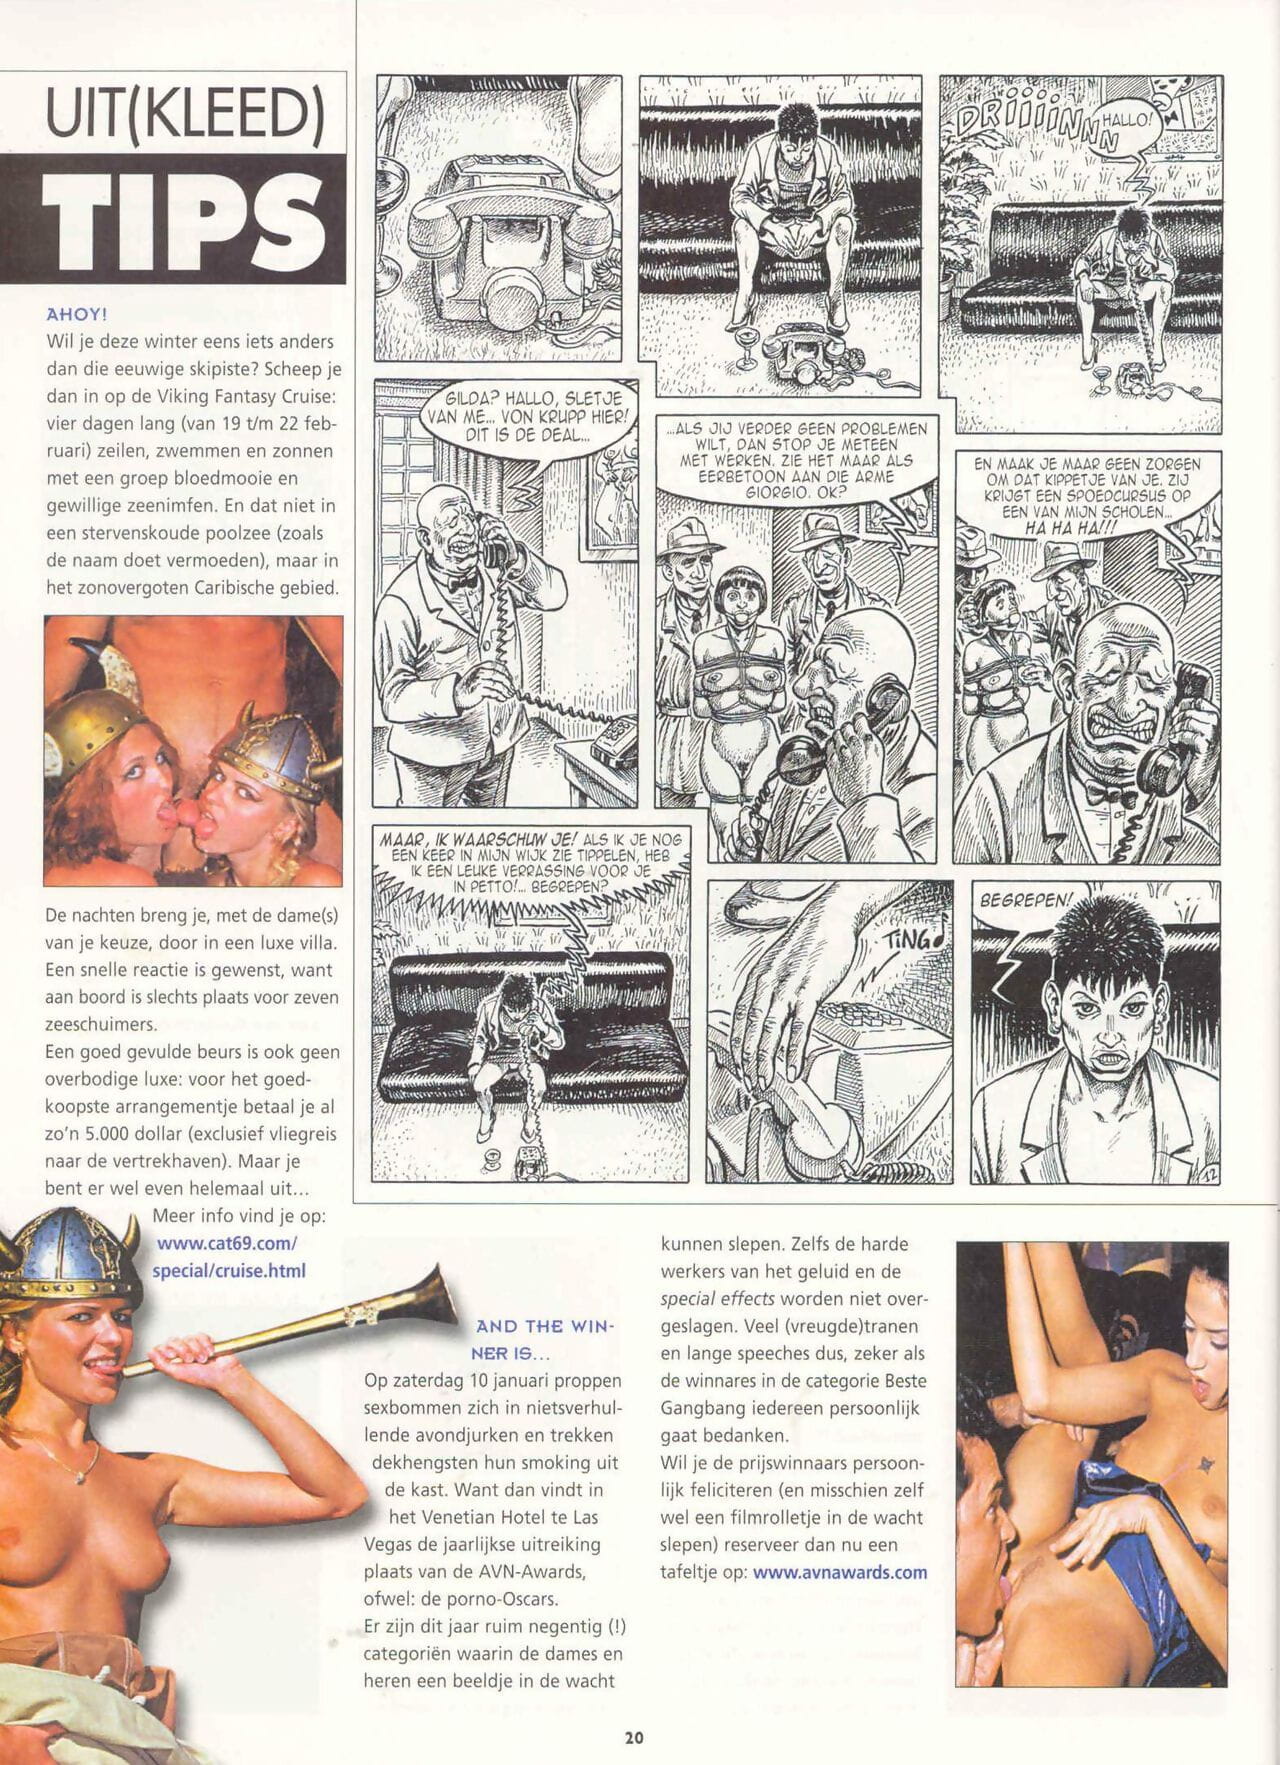 सायबान comix पत्रिका 54 page 1